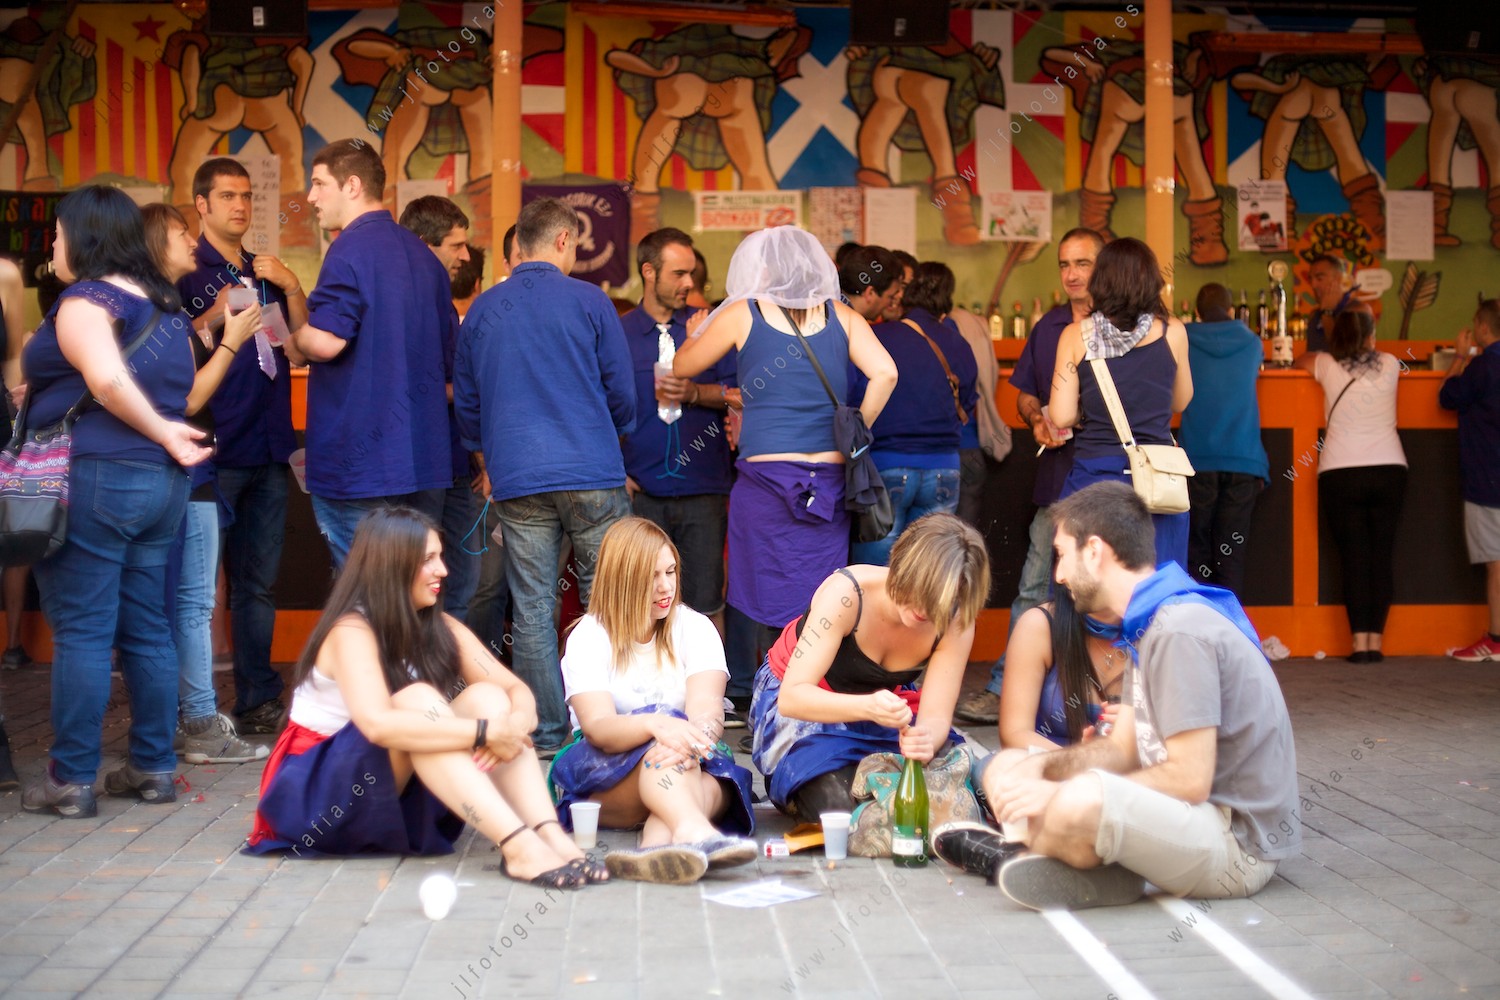 Aste Nagusia de Bilbao, grupo de jóvenes en la zona de txoznas bebiendo sidra